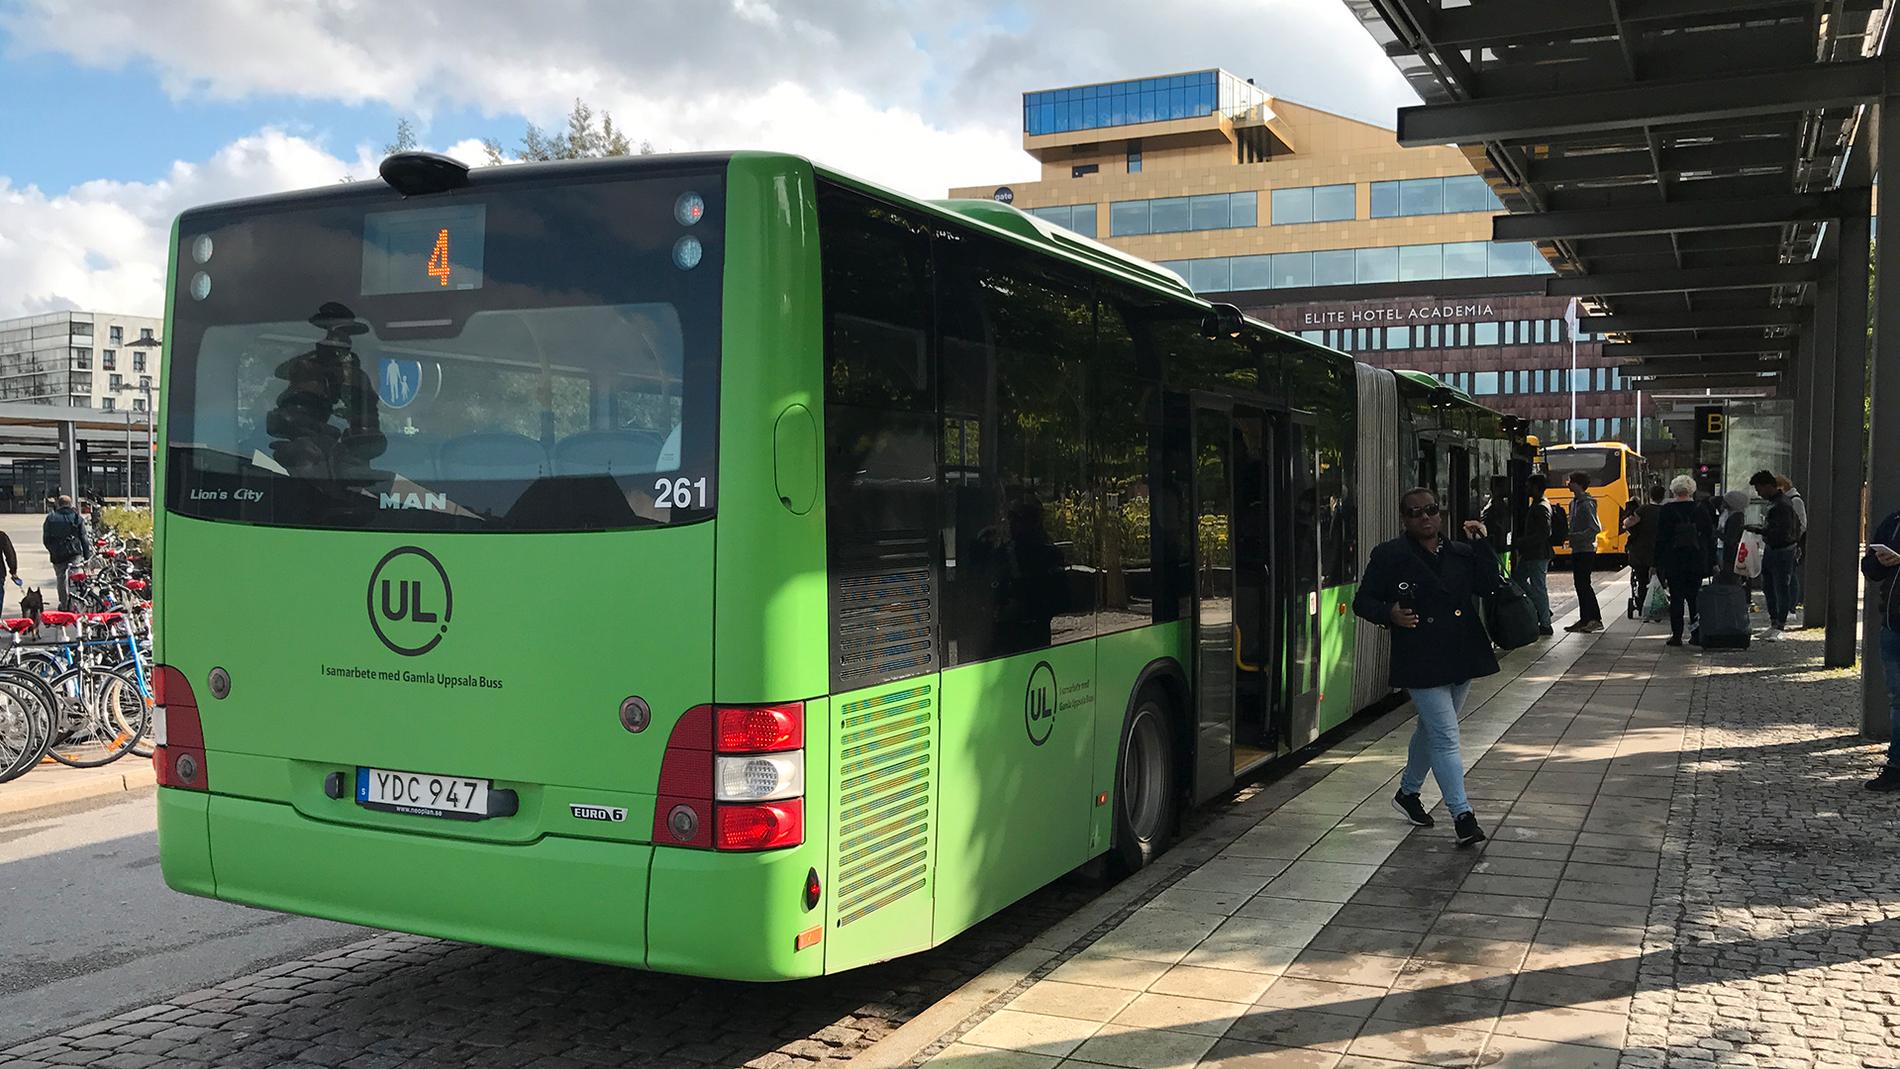 UL uppmanar resenärer att gå ombord i bak på bussen.